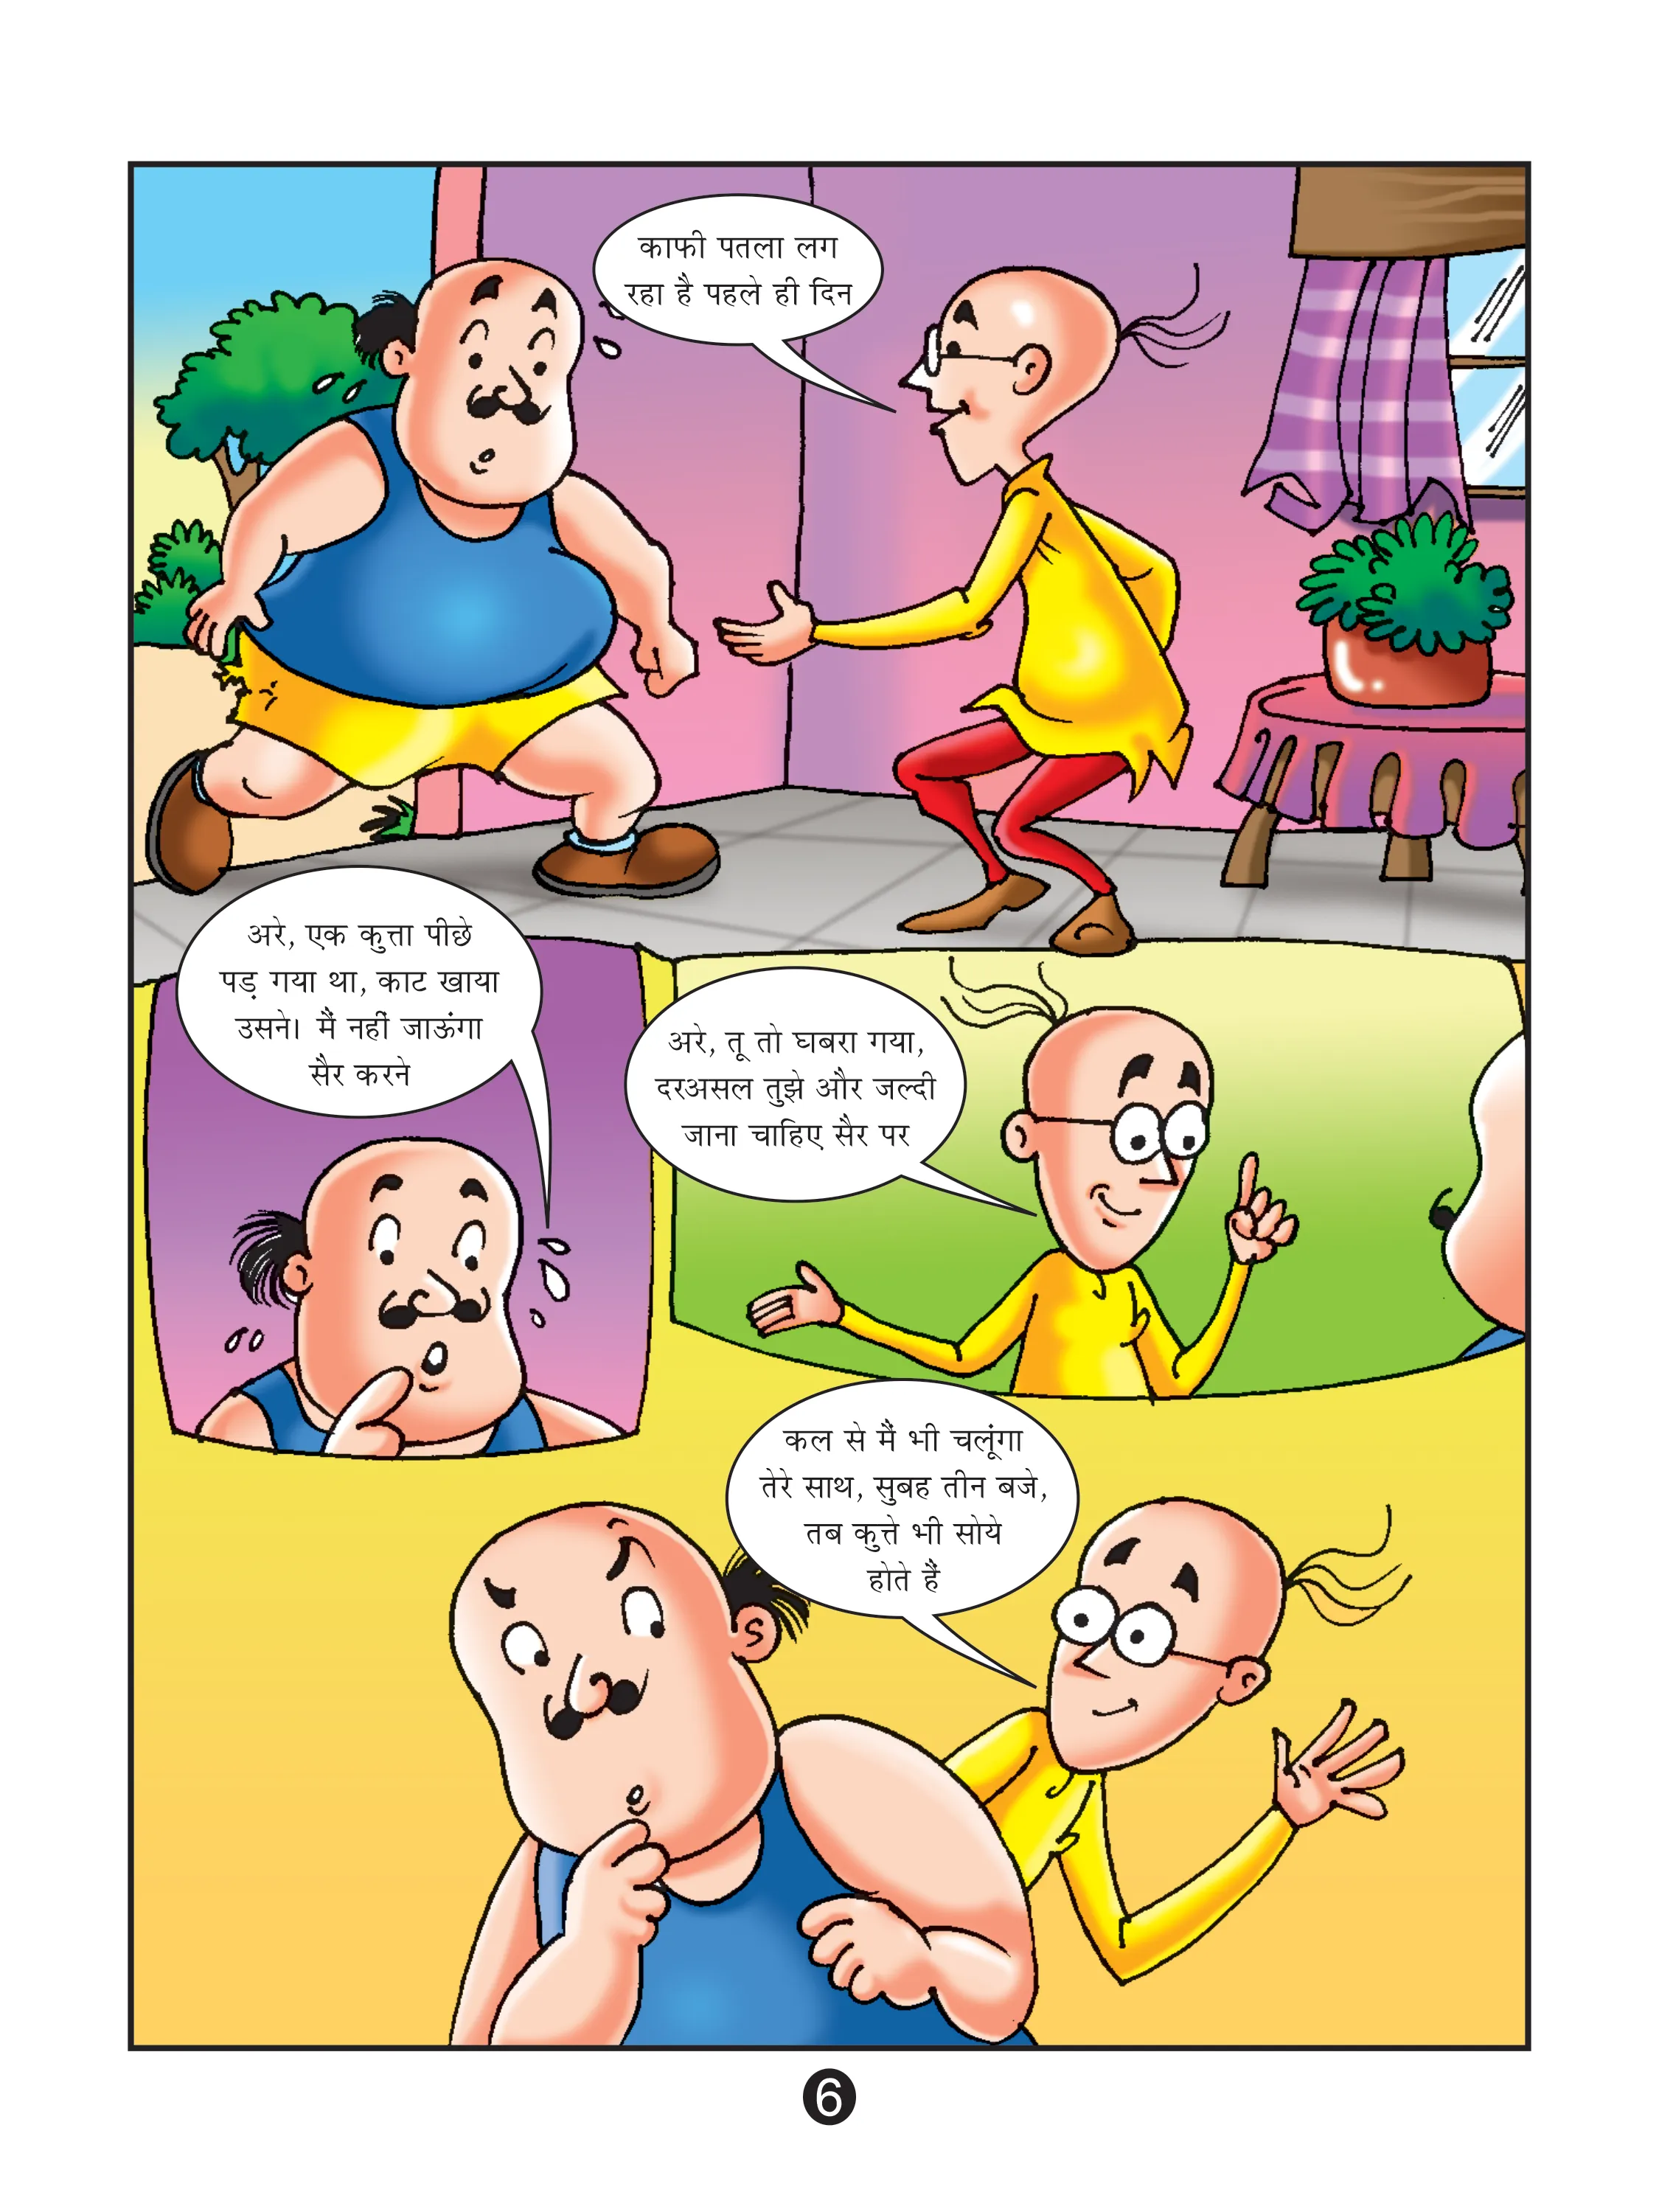 Lotpot E-Comics Cartoon Character Motu Patlu